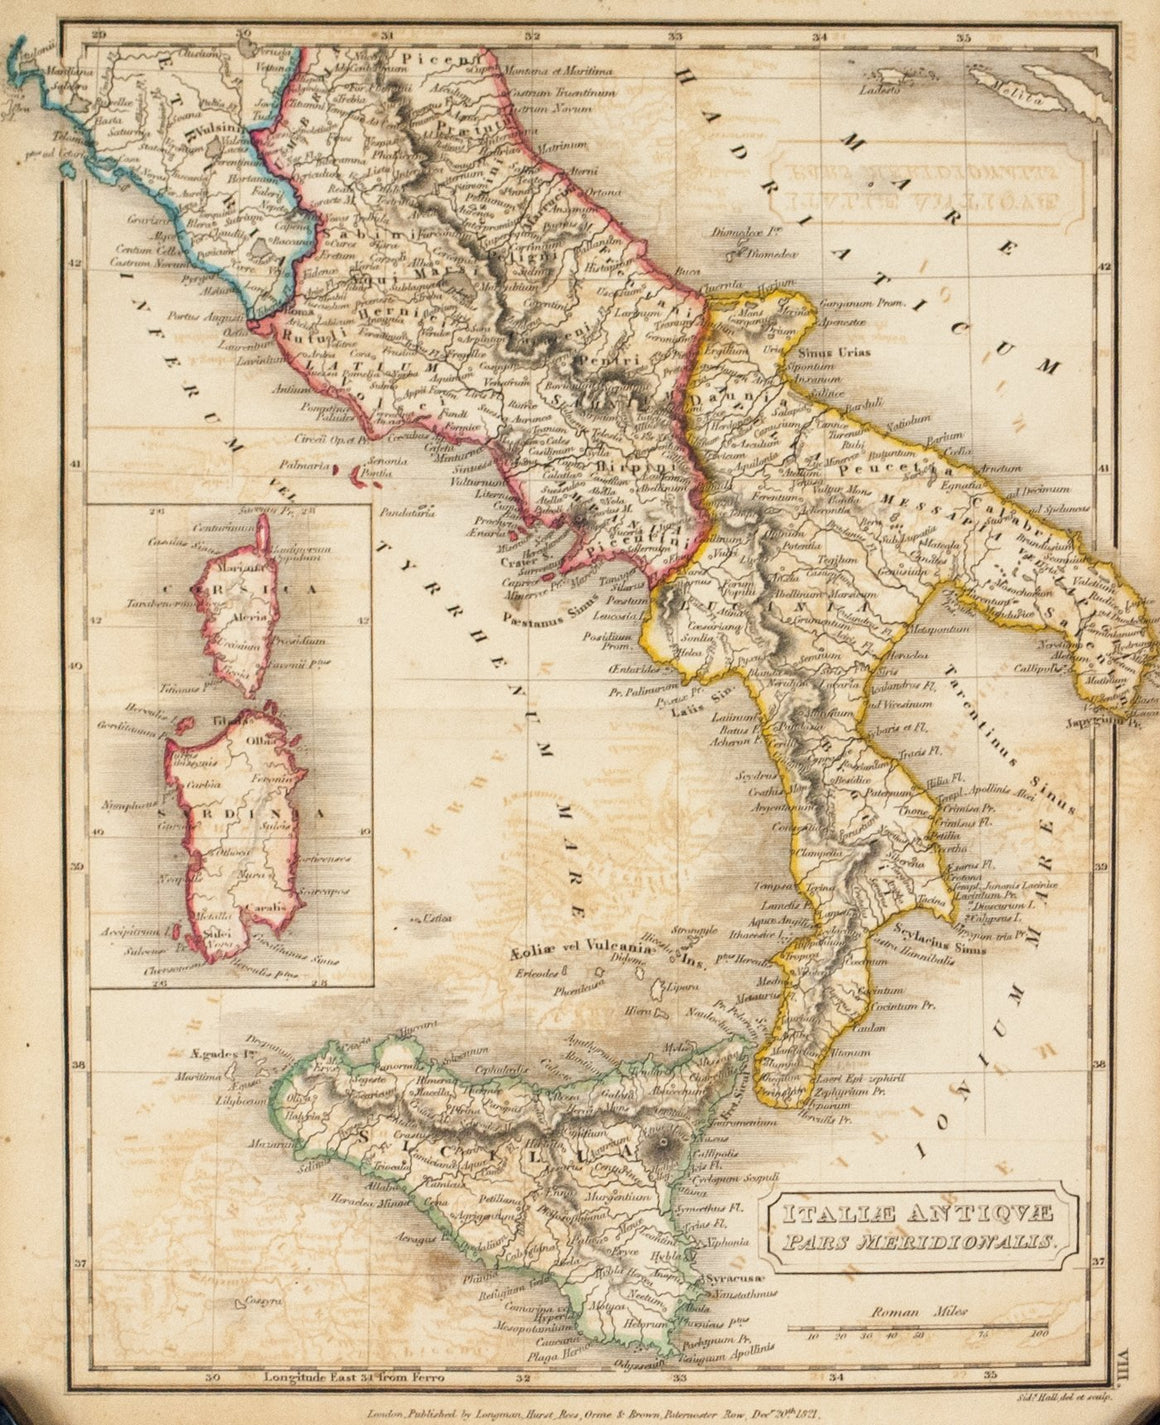 1822 Italiae Antiquae, Pars Meridionalis - Hall